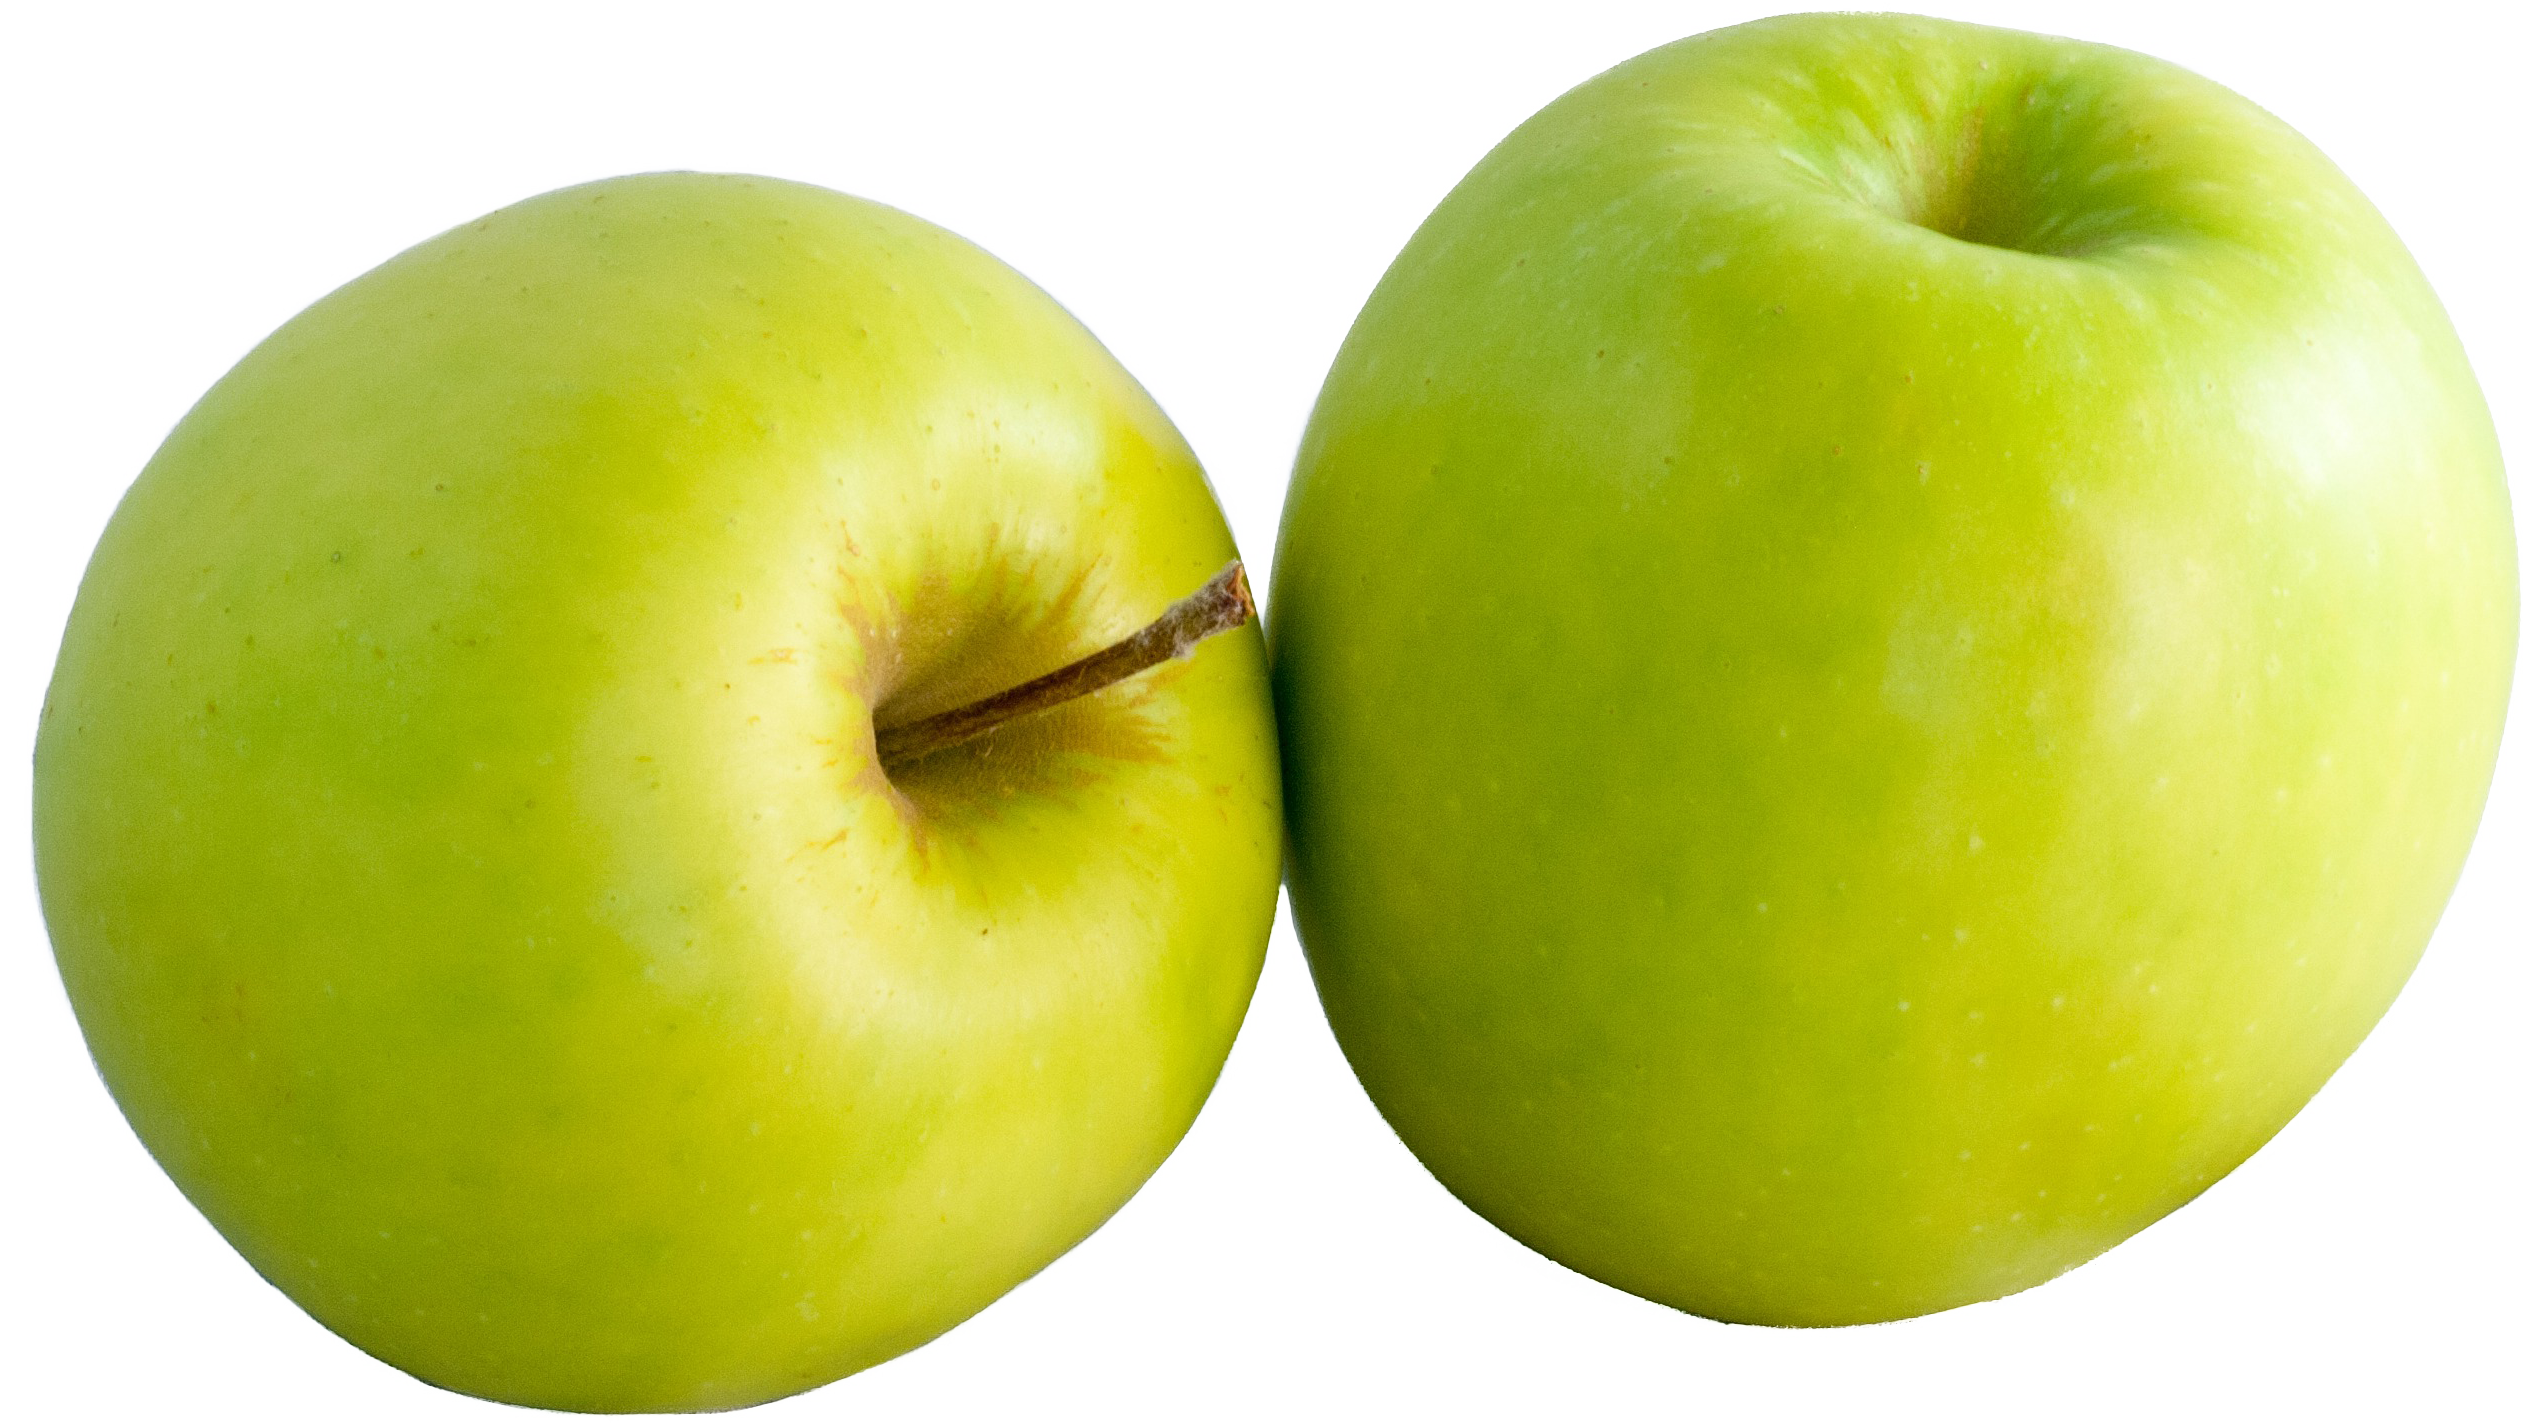 두 개의 녹색 사과